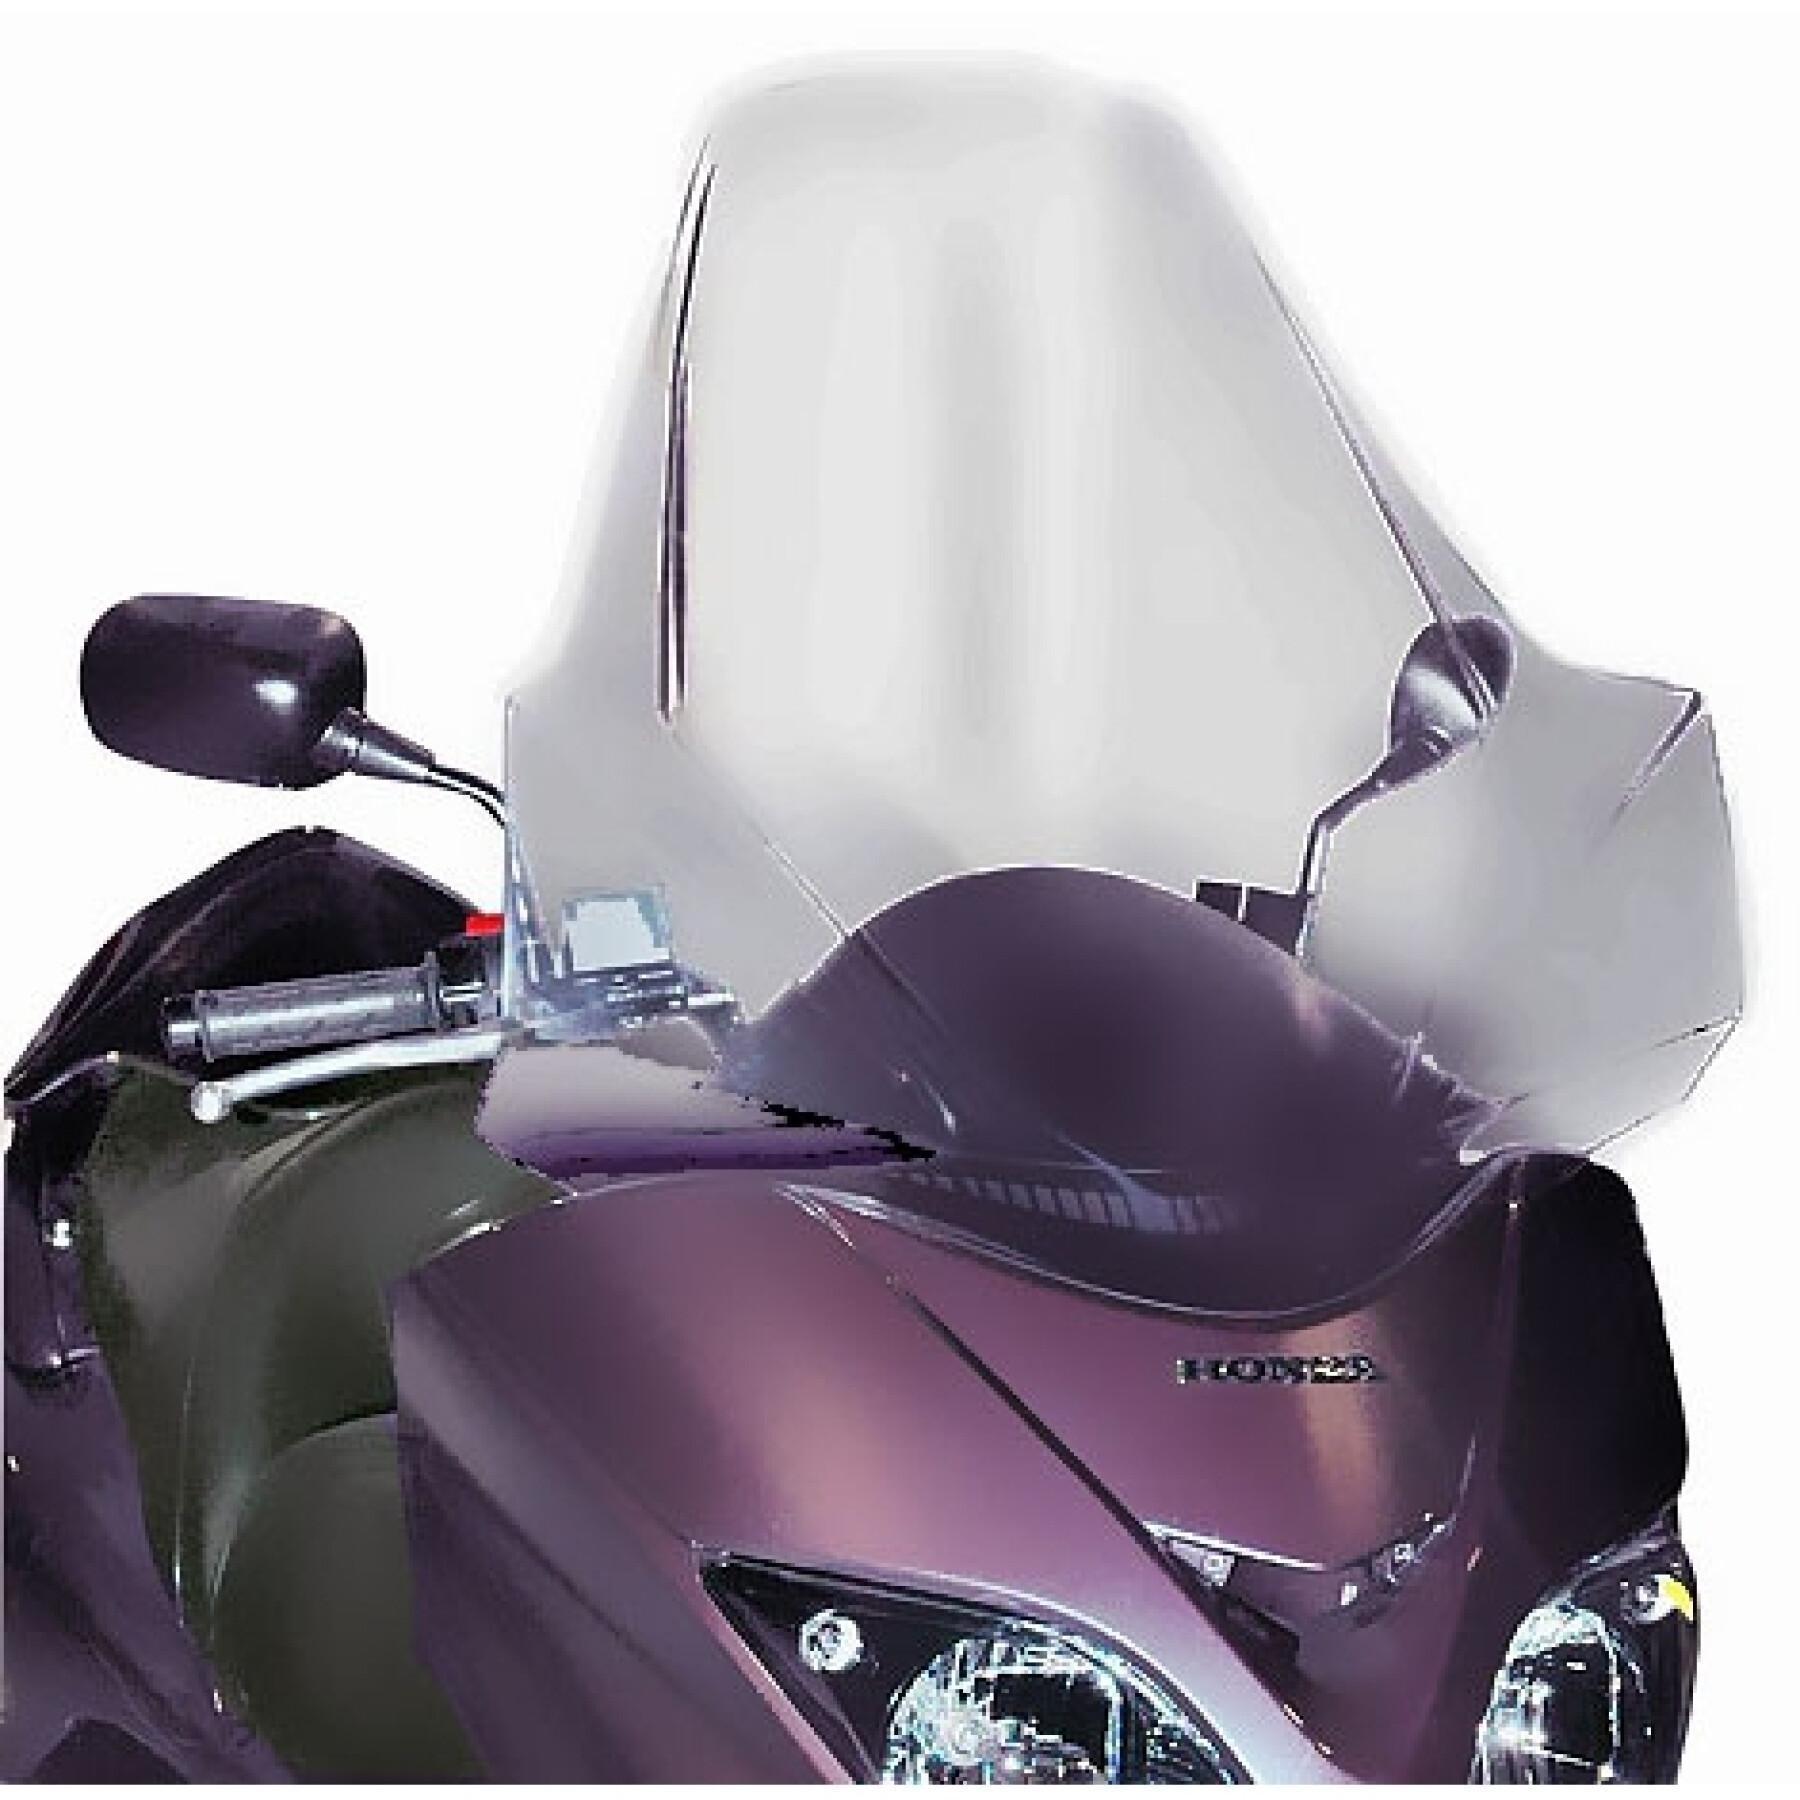 Windschutzscheibe Roller Givi Honda Forza 250 (2005 à 2007) -  Windschutzscheiben - Abdeckplanen - Motorrad & Roller